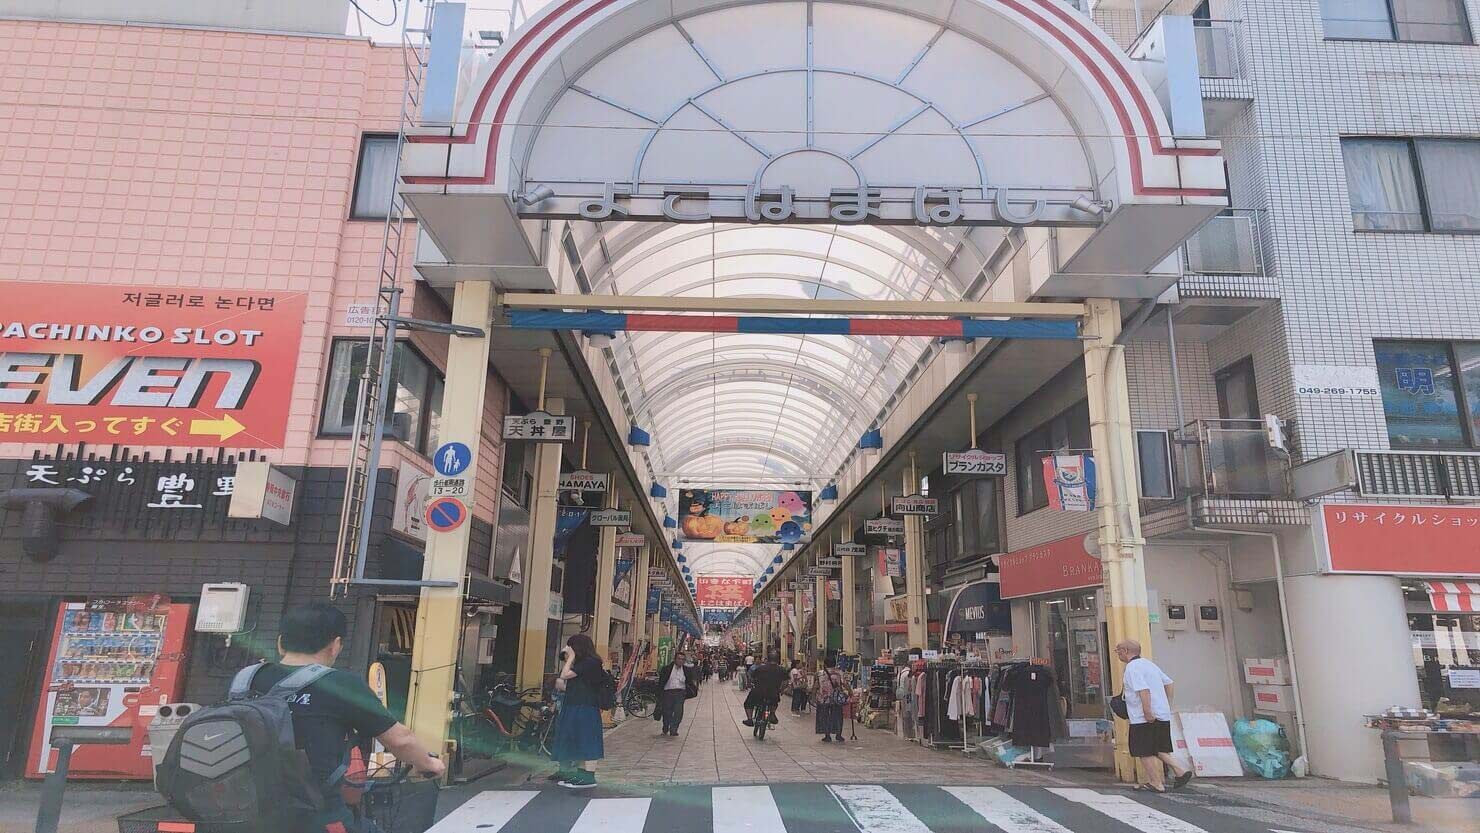 ホームズ ハマの台所 横浜橋商店街で暮らそう 住んで分かるディープな下町の魅力 暮らし方から物件探し